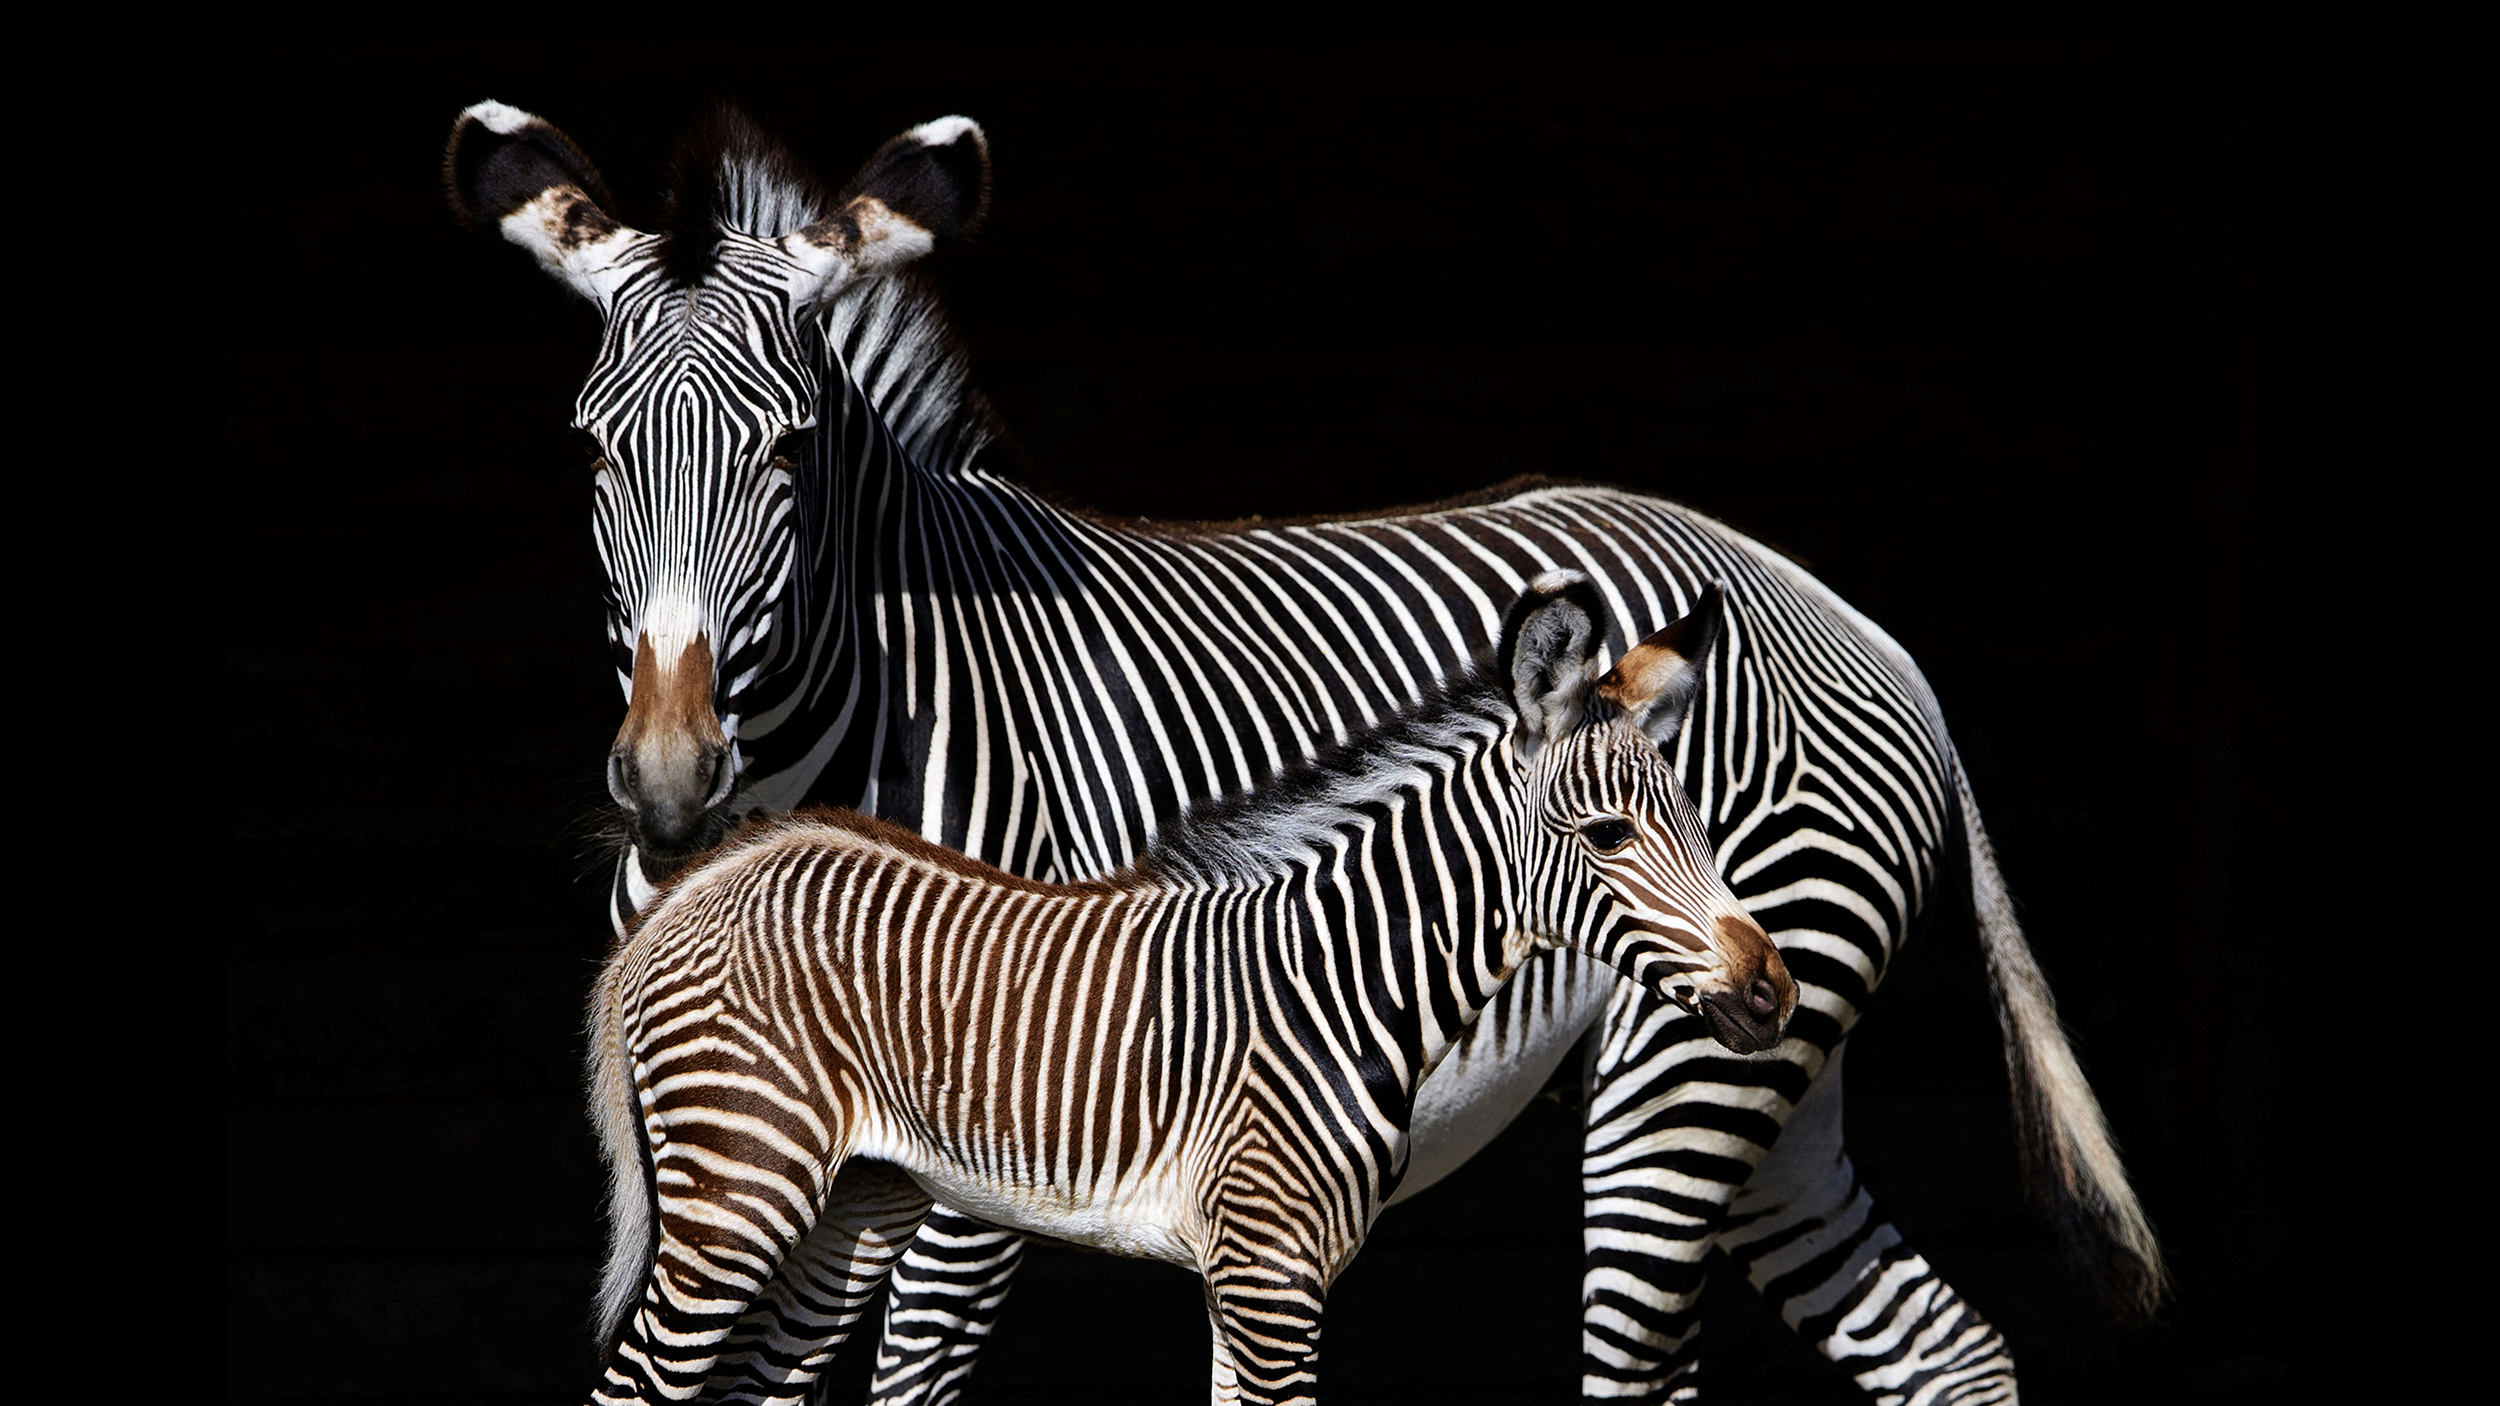 Experiencing the zebra effect, a zebra stands near a baby zebra.